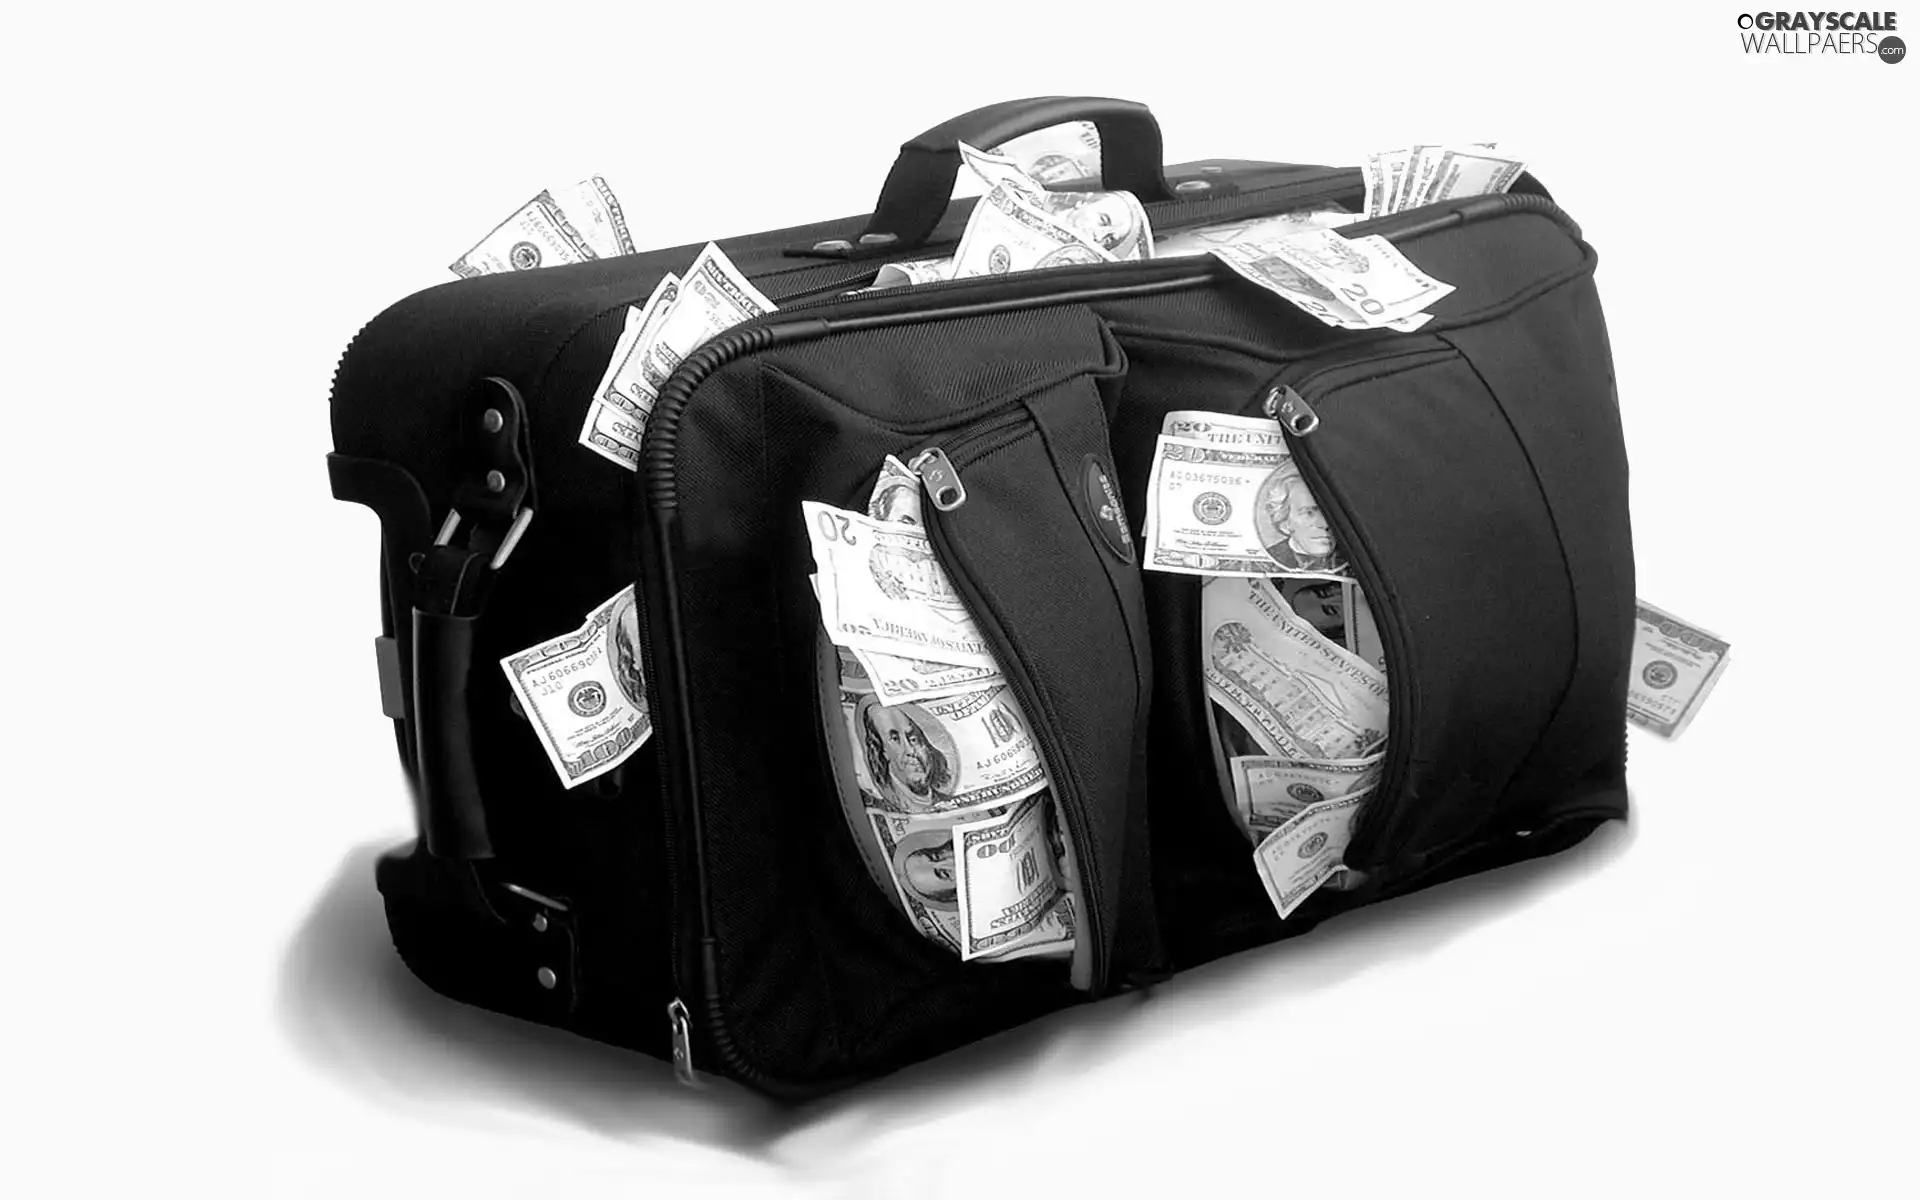 bag, U.S. dollars